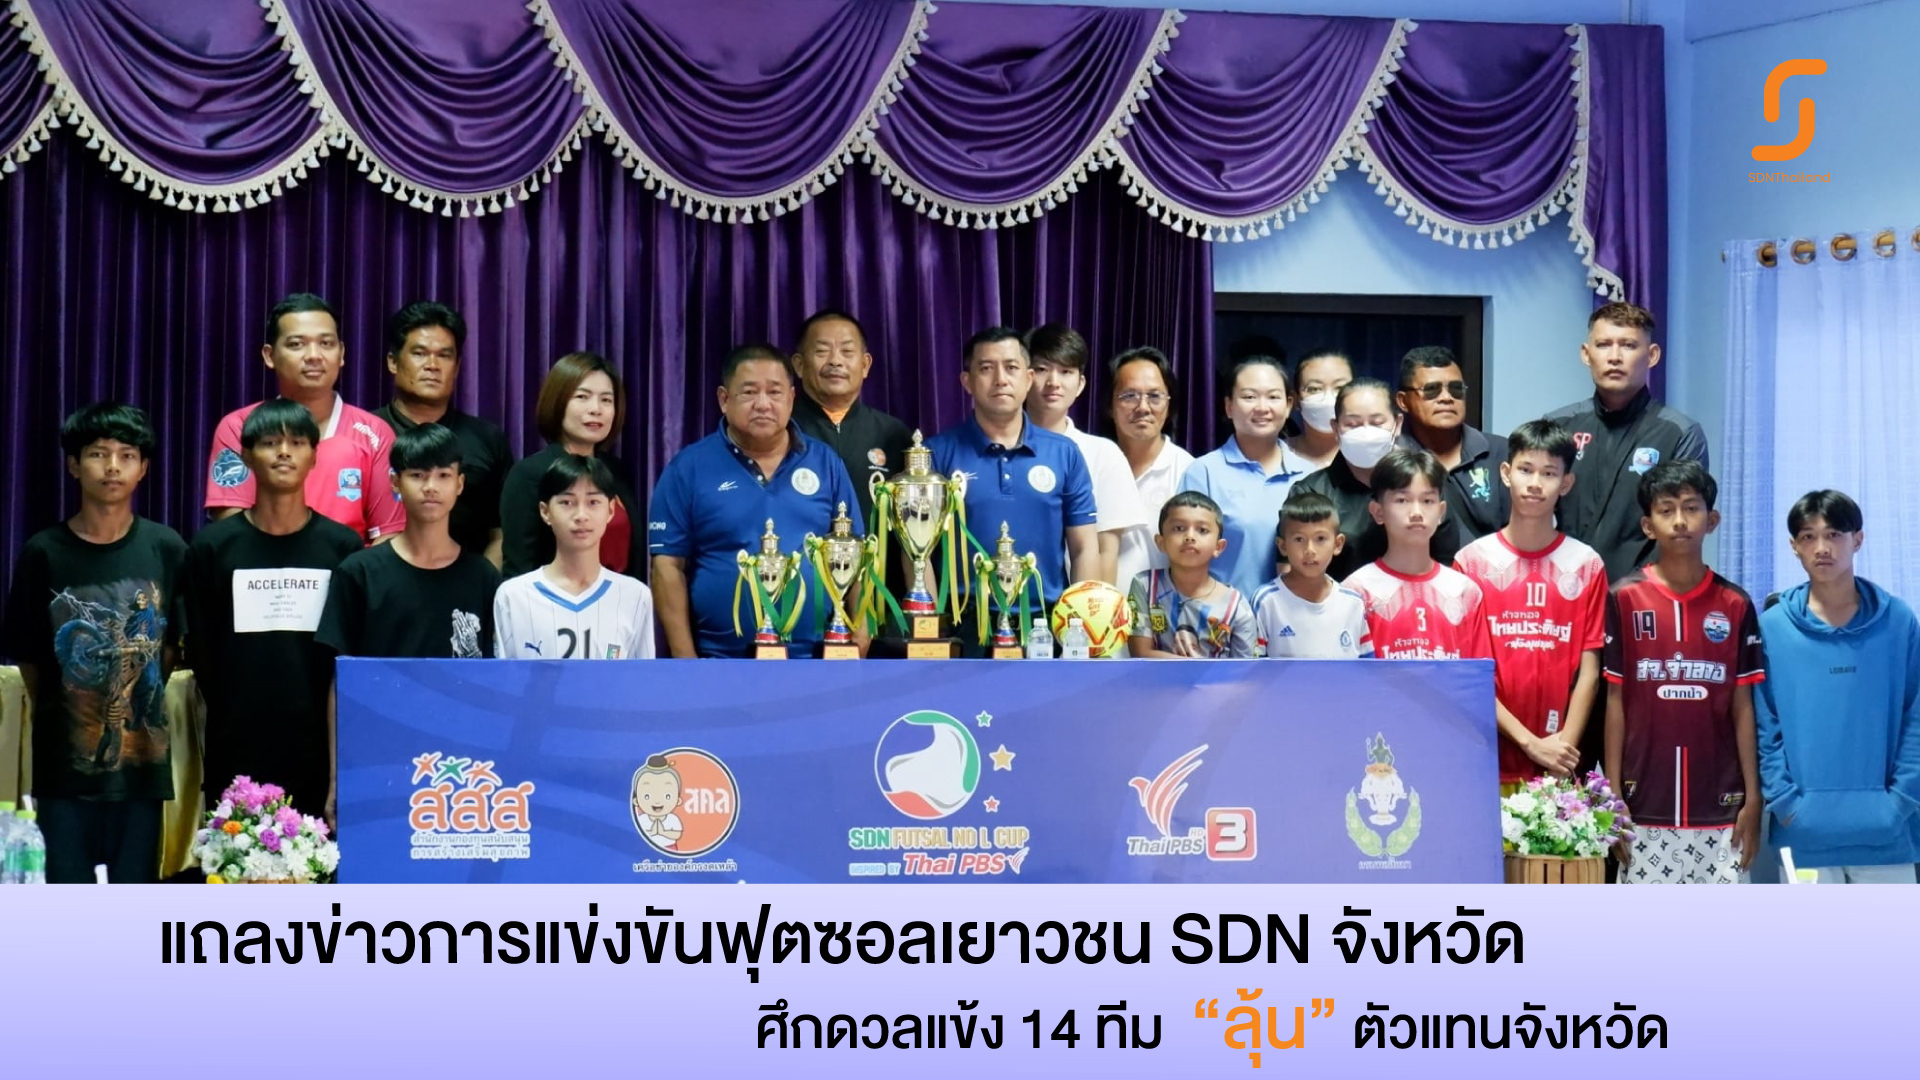 สคล.จังหวัดระนอง แถลงข่าวการแข่งขันฟุตซอลเยาวชนชายอายุไม่เกิน 15 ปี ชิงแชมป์ประเทศไทย ครั้งที่ 5 ประจำปี 2567